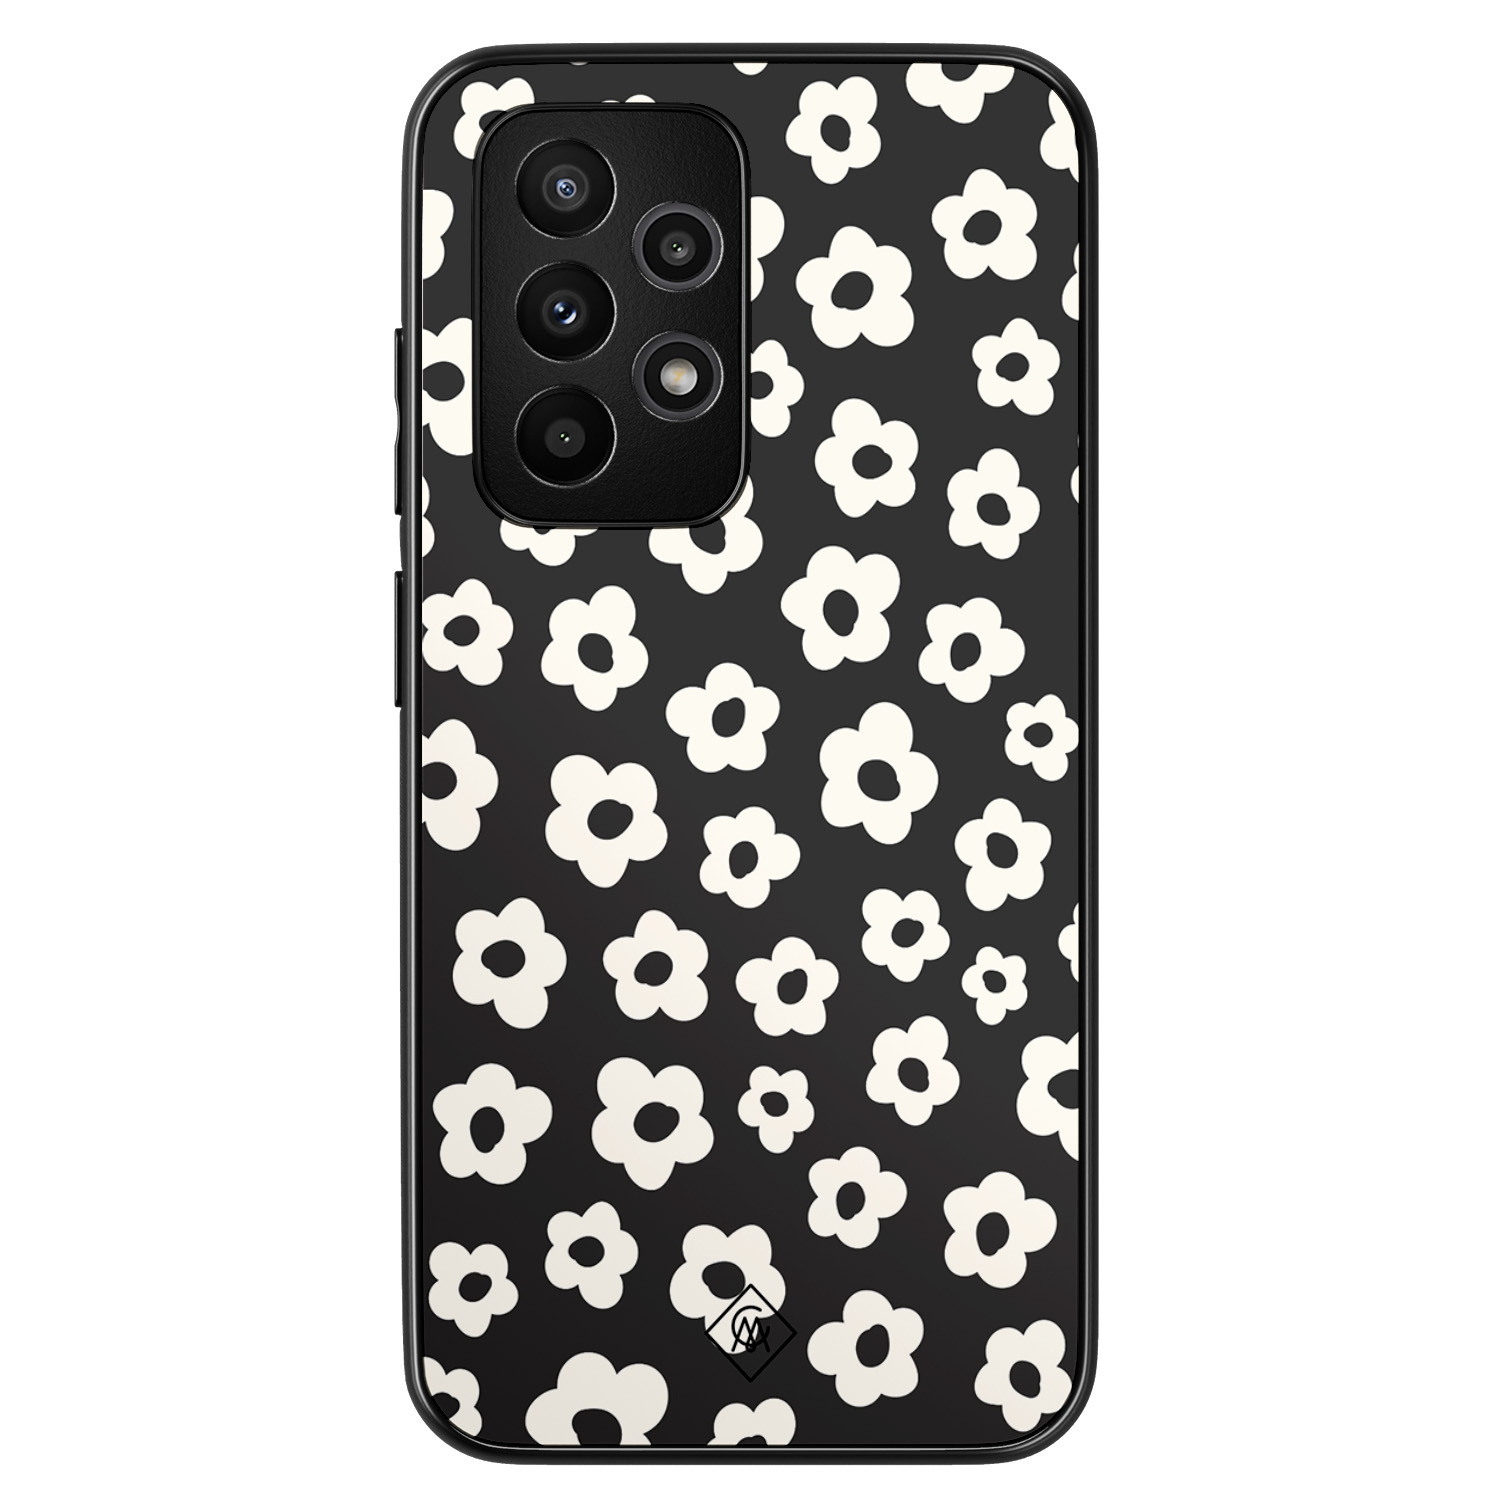 Samsung Galaxy A52 hoesje - Retro bloempjes